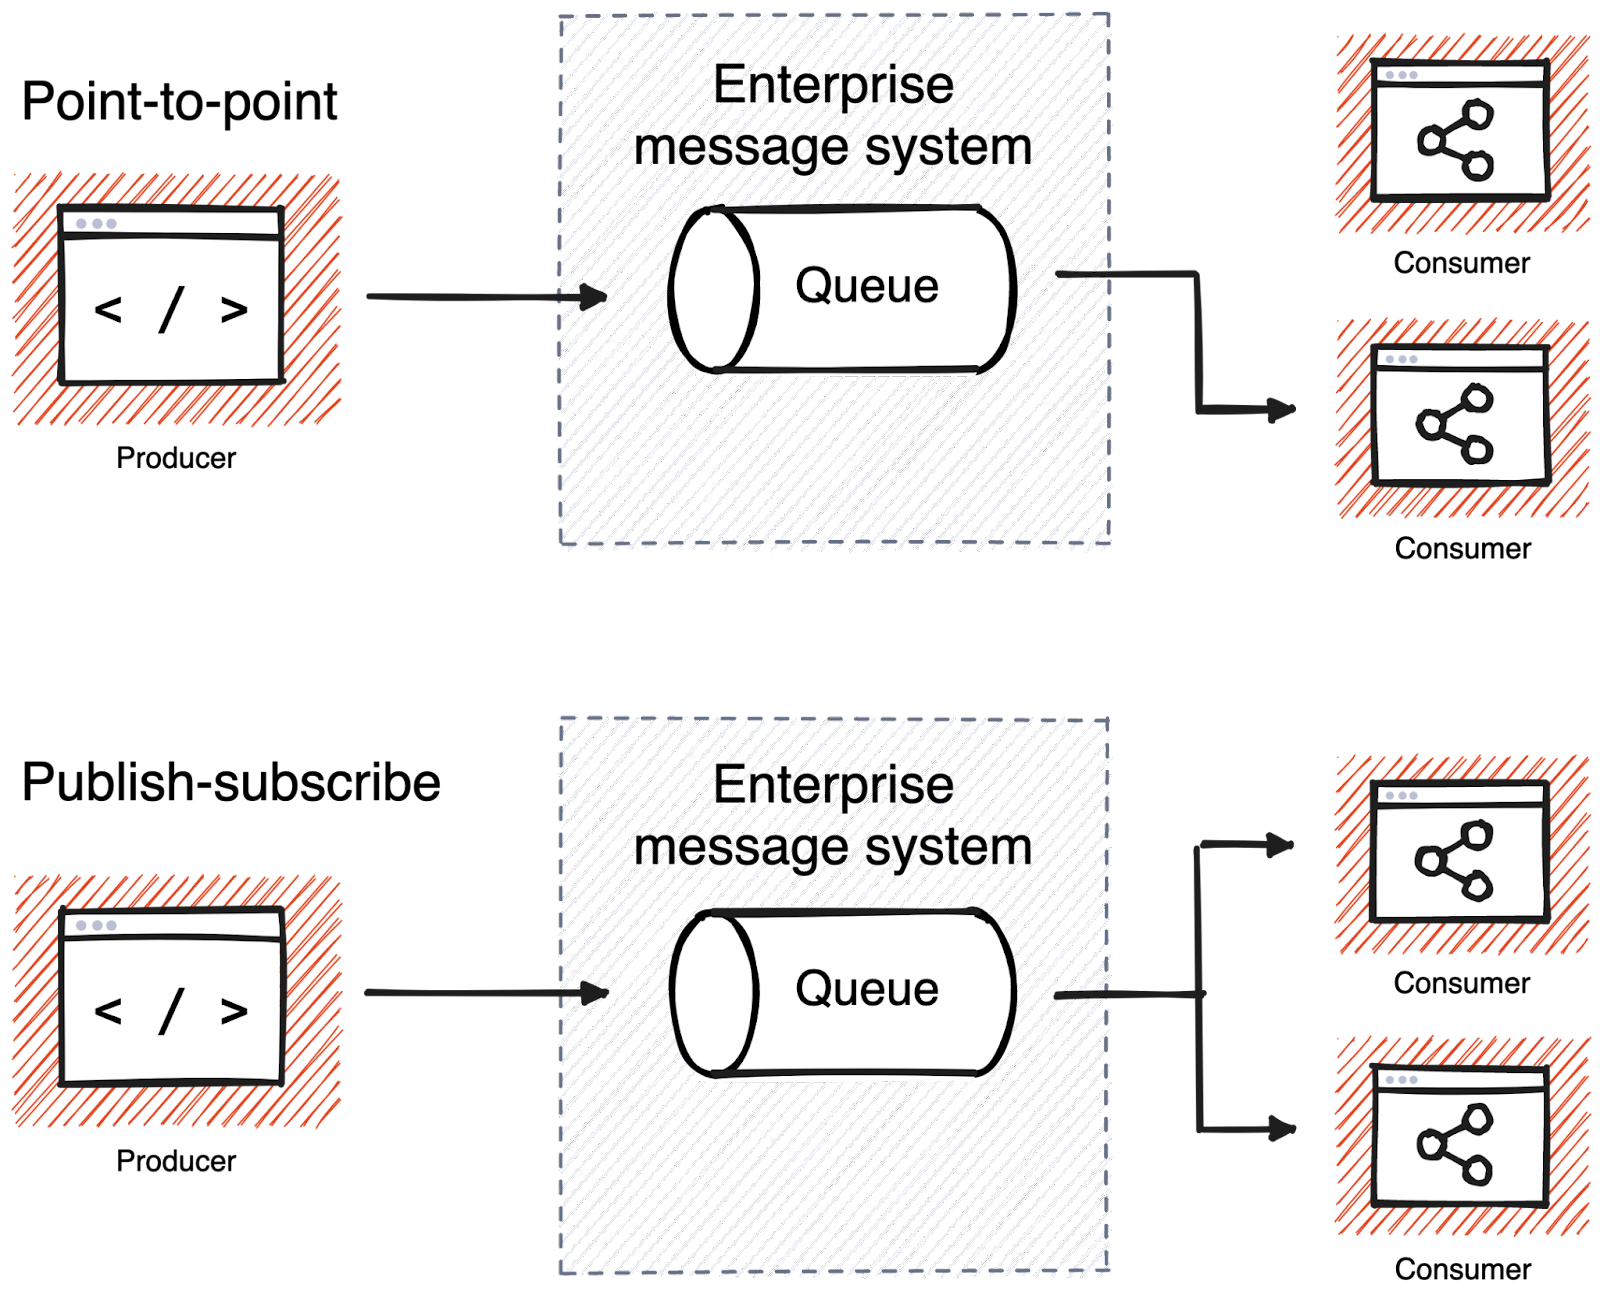 Enterprise messaging architecture diagram